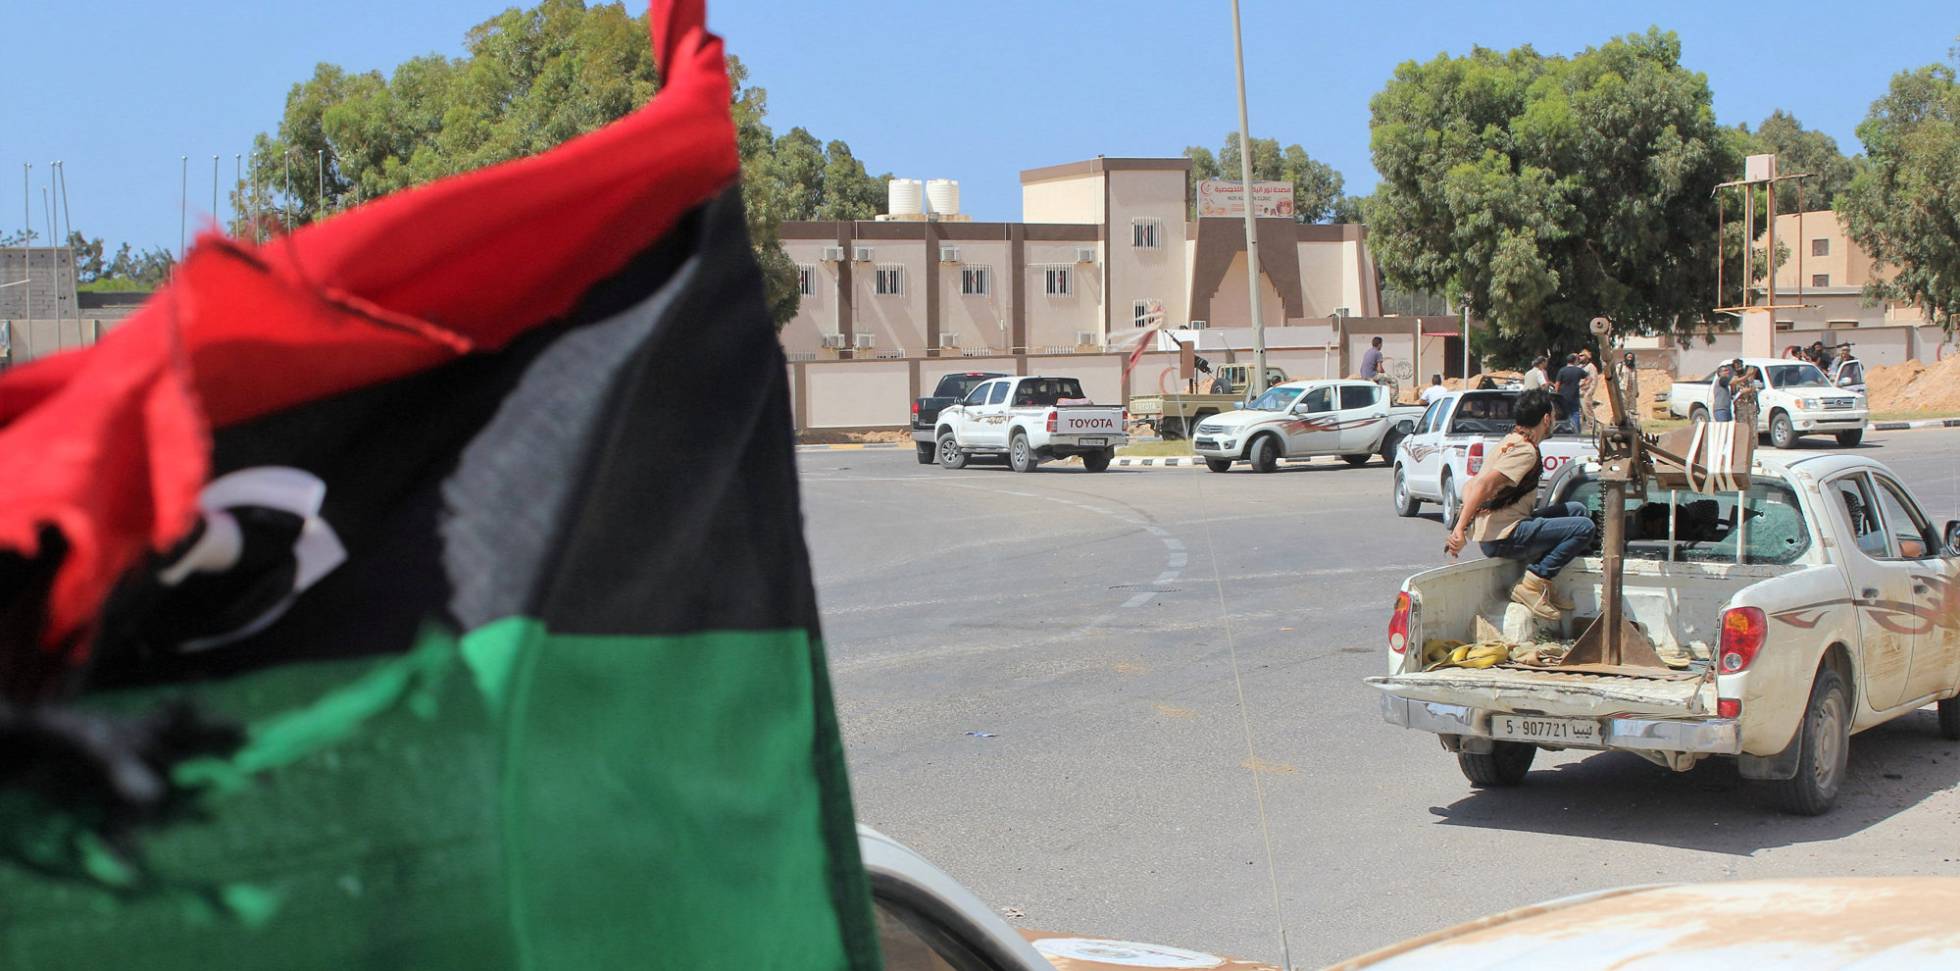 Libia - Entre la guerra civil y las manos del EI - Página 2 1465636219_310904_1465636448_noticia_normal_recorte1